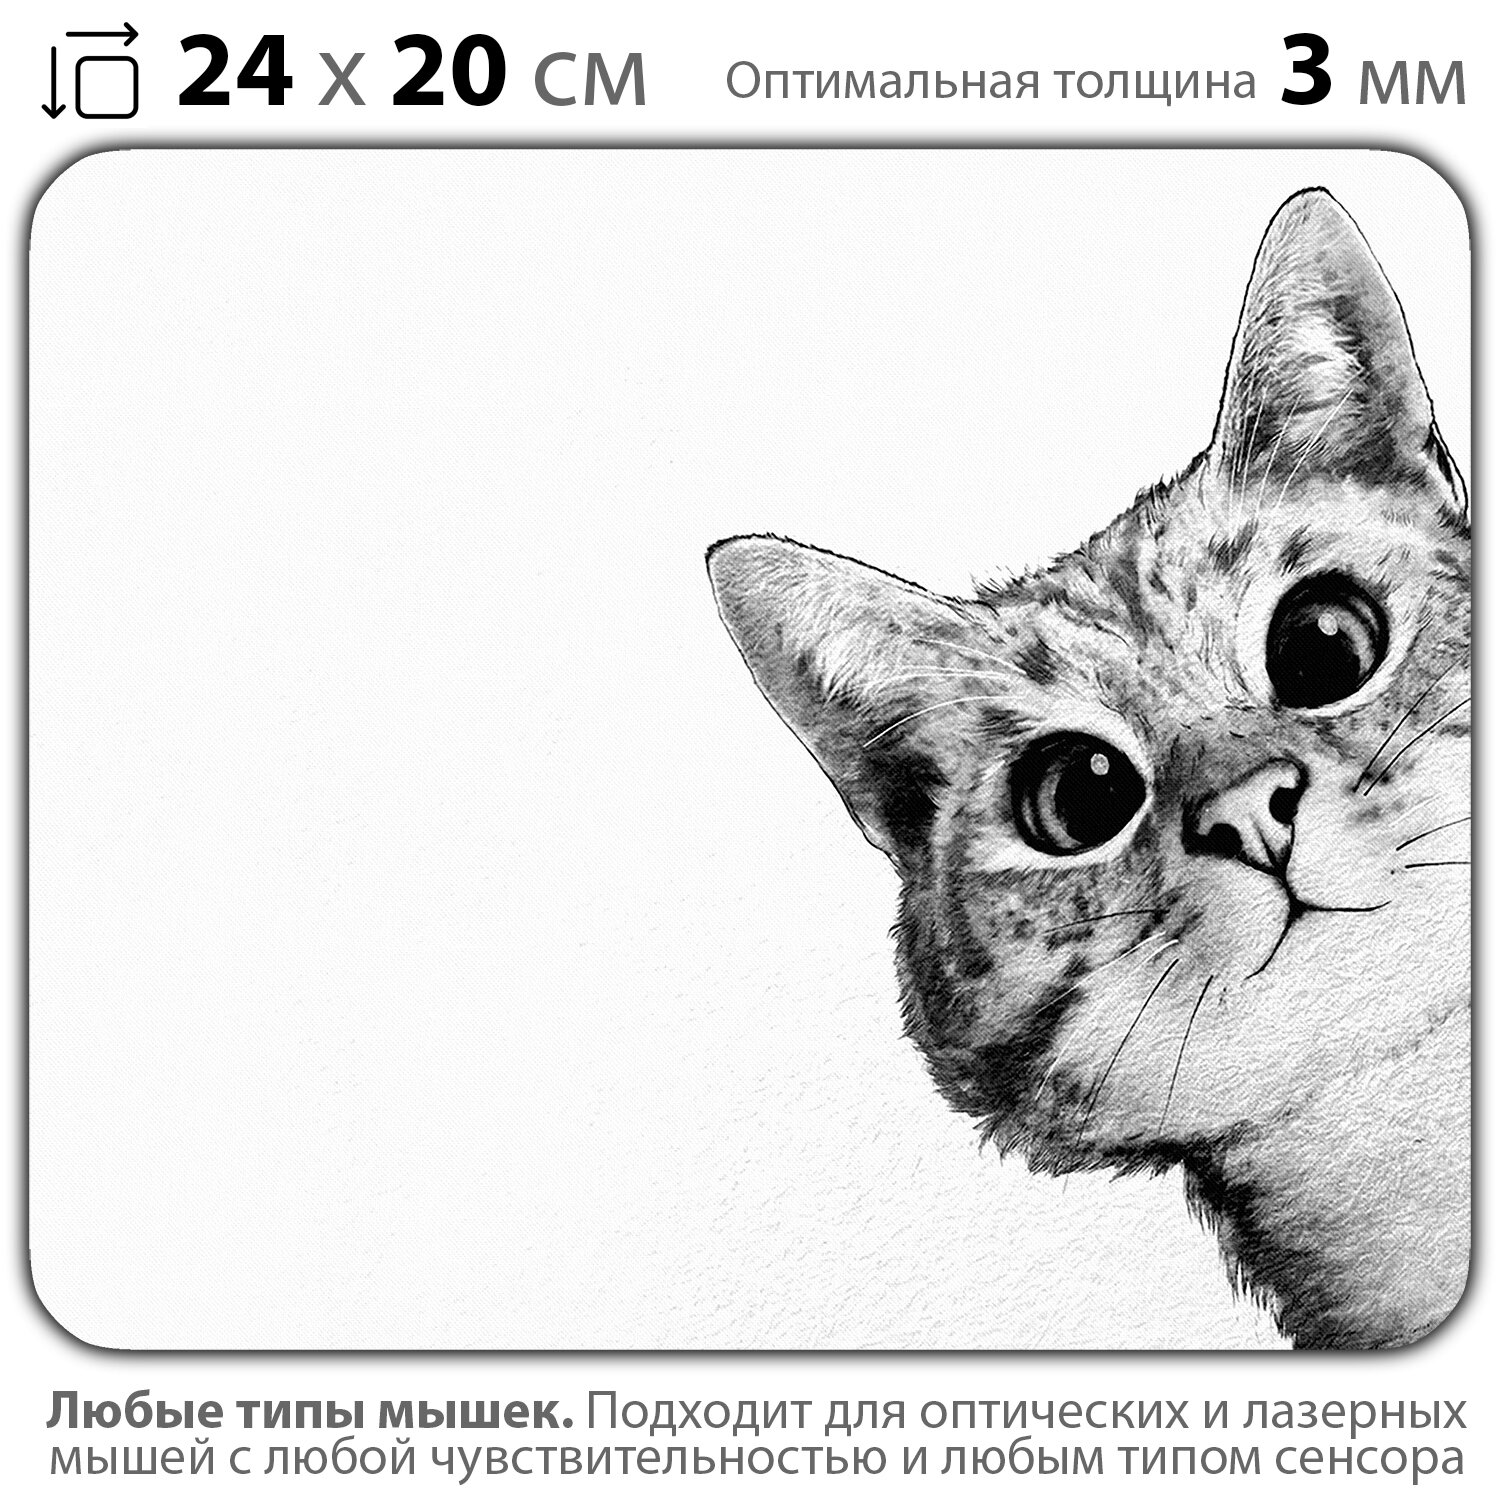 Коврик для мыши "Любопытный котик" (24 x 20 см x 3 мм)